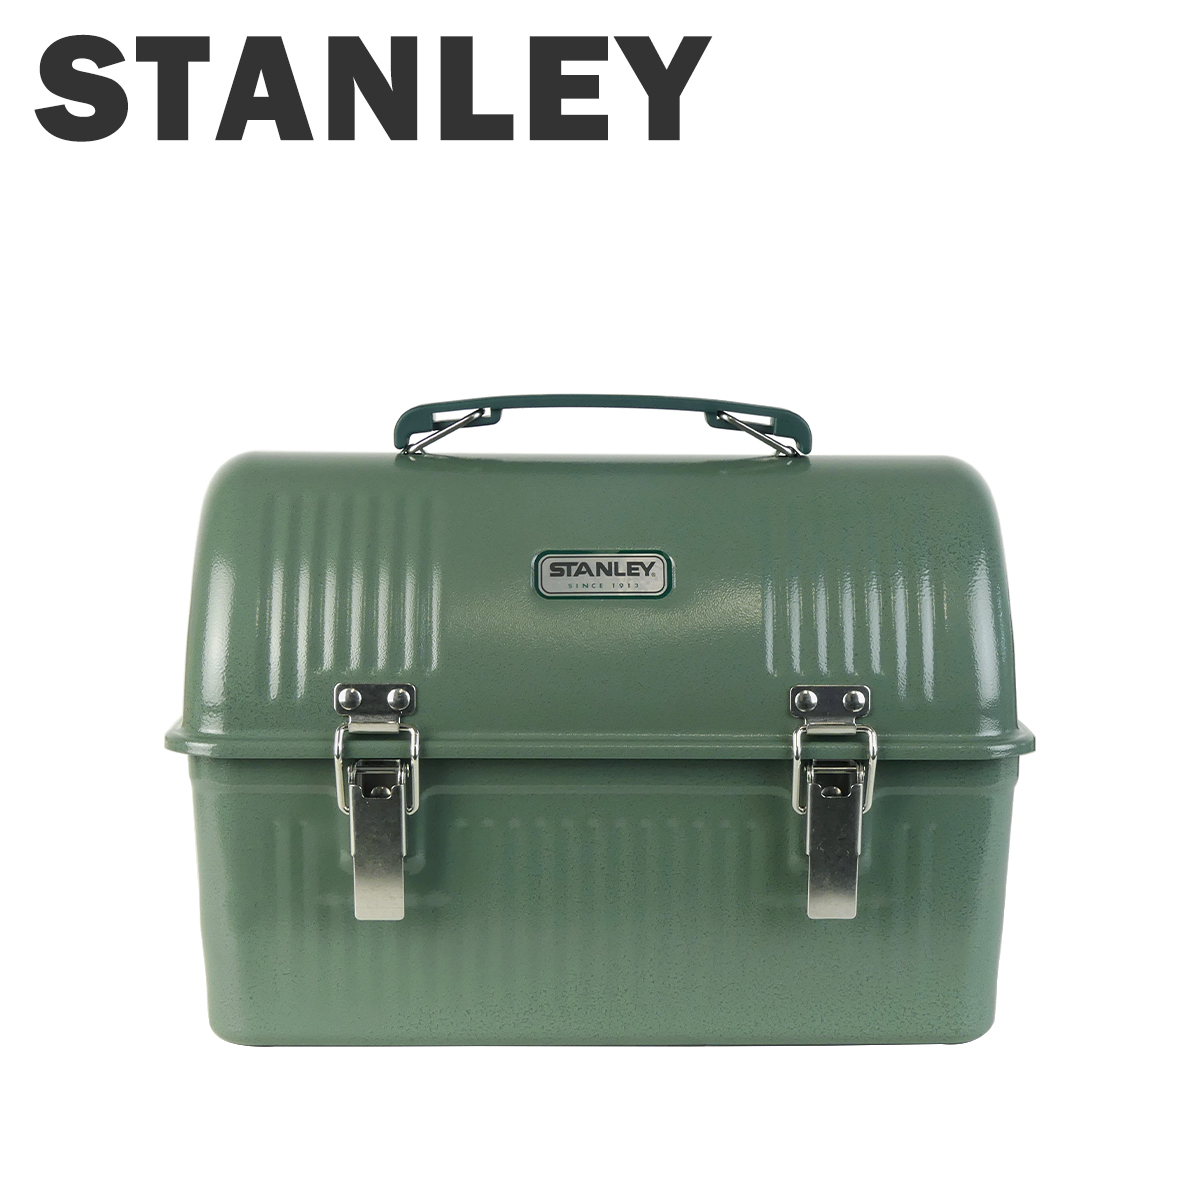 スタンレー Stanley クラシック ランチボックス 9.4L 10-01625 CLASSIC LUNCH BOX スチール製 ランチグッズ ピクニック アウトドア キャンプ 工具箱 収納ボックス